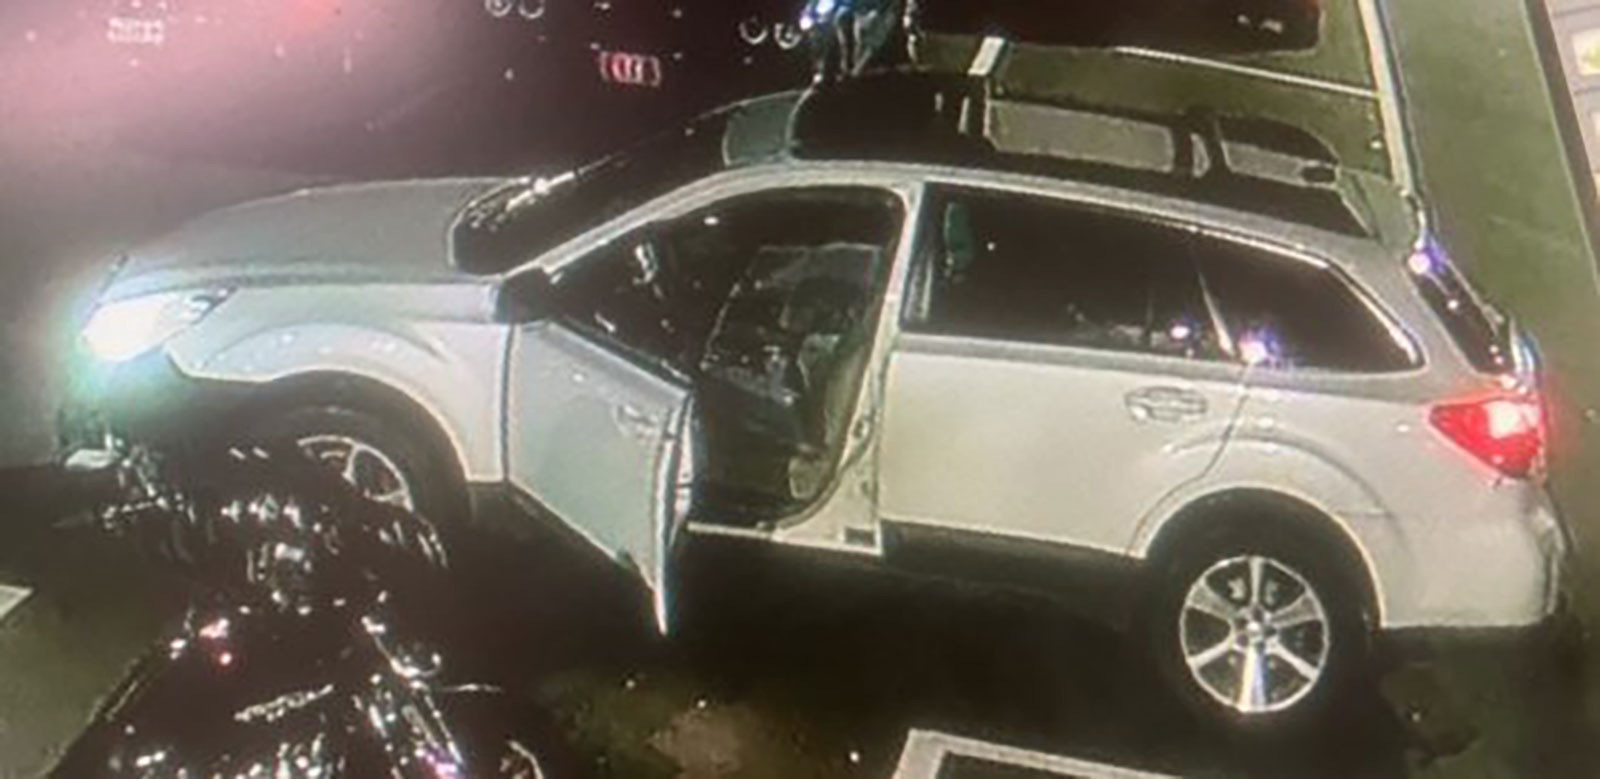 Sở Cảnh sát Lewiston công bố hình ảnh một chiếc xe có liên quan đến vụ xả súng - Ảnh: CNN